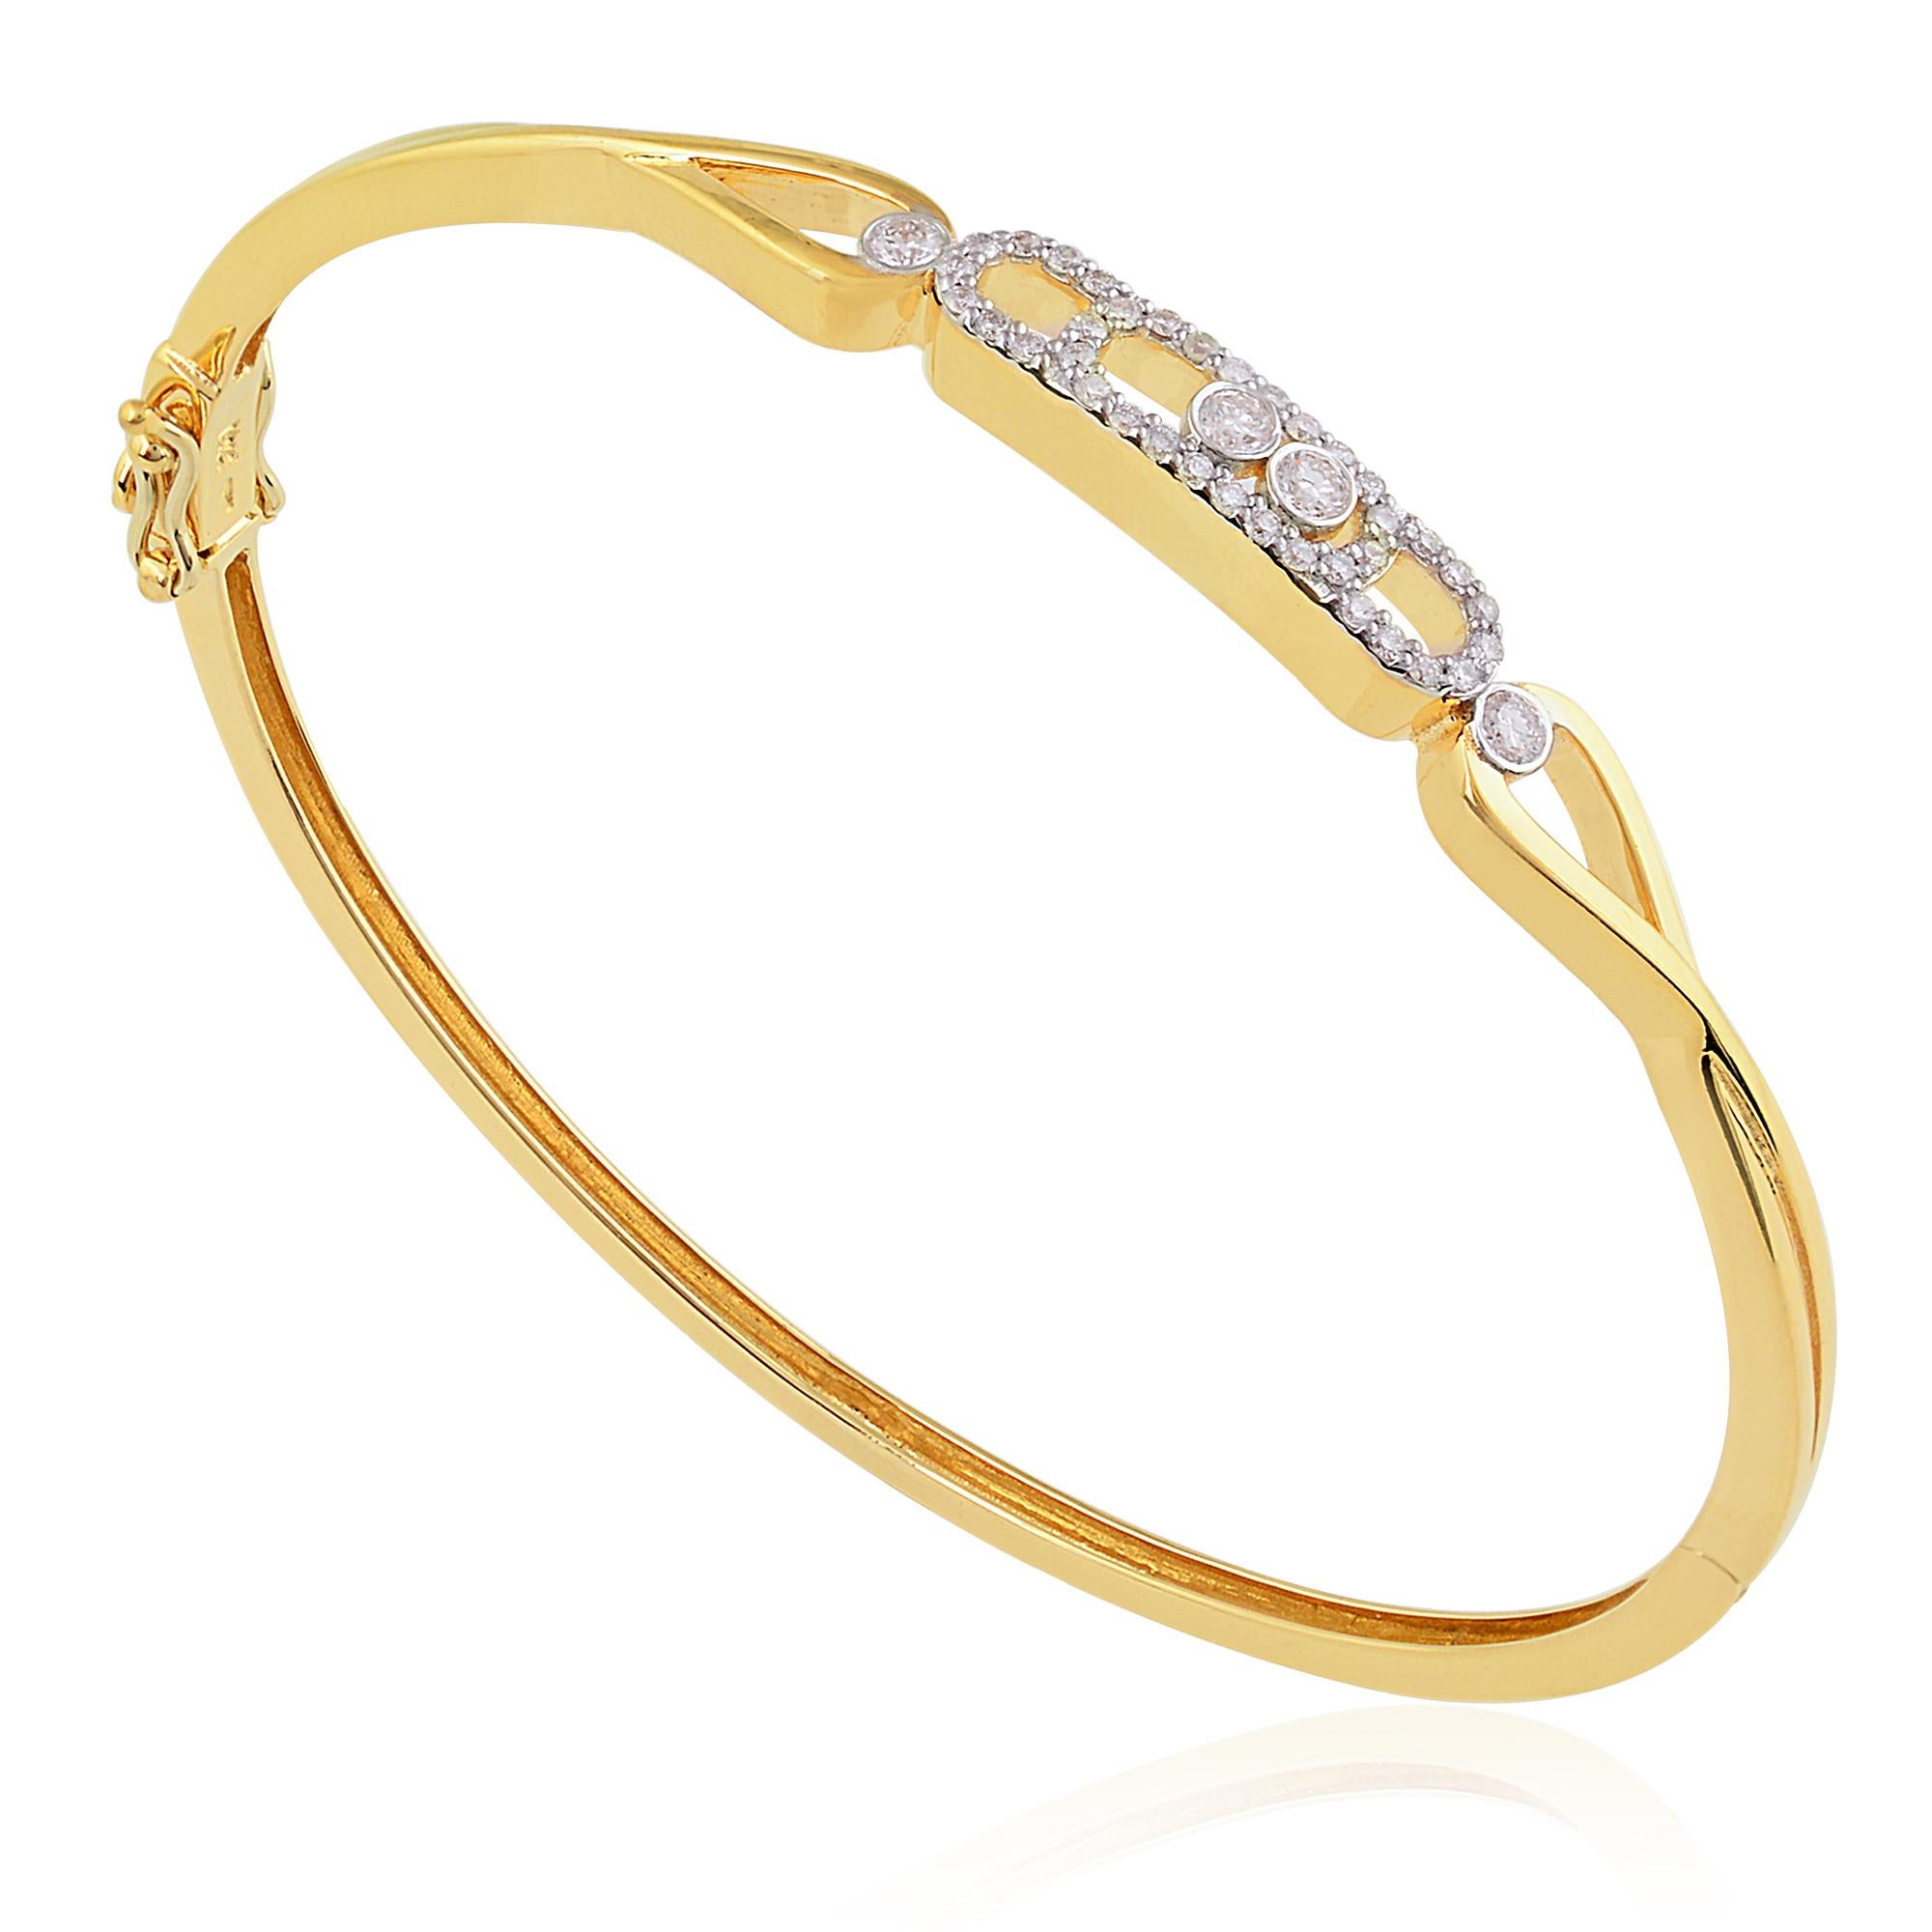 Dieses exquisite Armband aus strahlendem 18-karätigem Gelbgold mit 0,34 Karat SI/H-Diamanten in Pave-Optik ist ein echter Hingucker. Dieses atemberaubende Armband zelebriert raffinierten Luxus und zeitlose Eleganz. Es schmückt Ihr Handgelenk mit